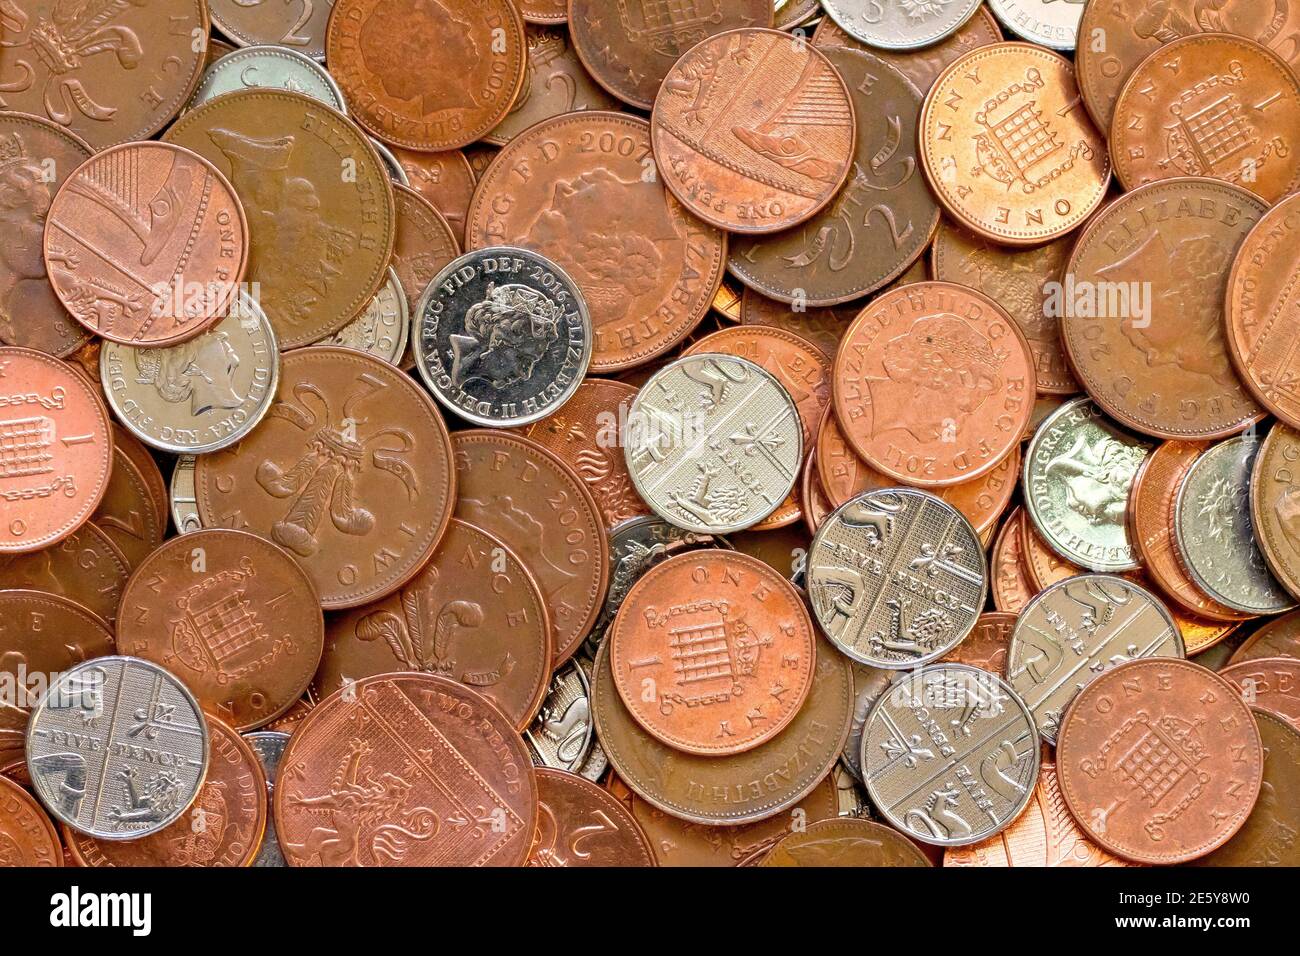 Gros plan d'une collection de pièces décimales britanniques à faible valeur nominale, à savoir des pièces de cinq cents, deux pences et cinq pences. Banque D'Images